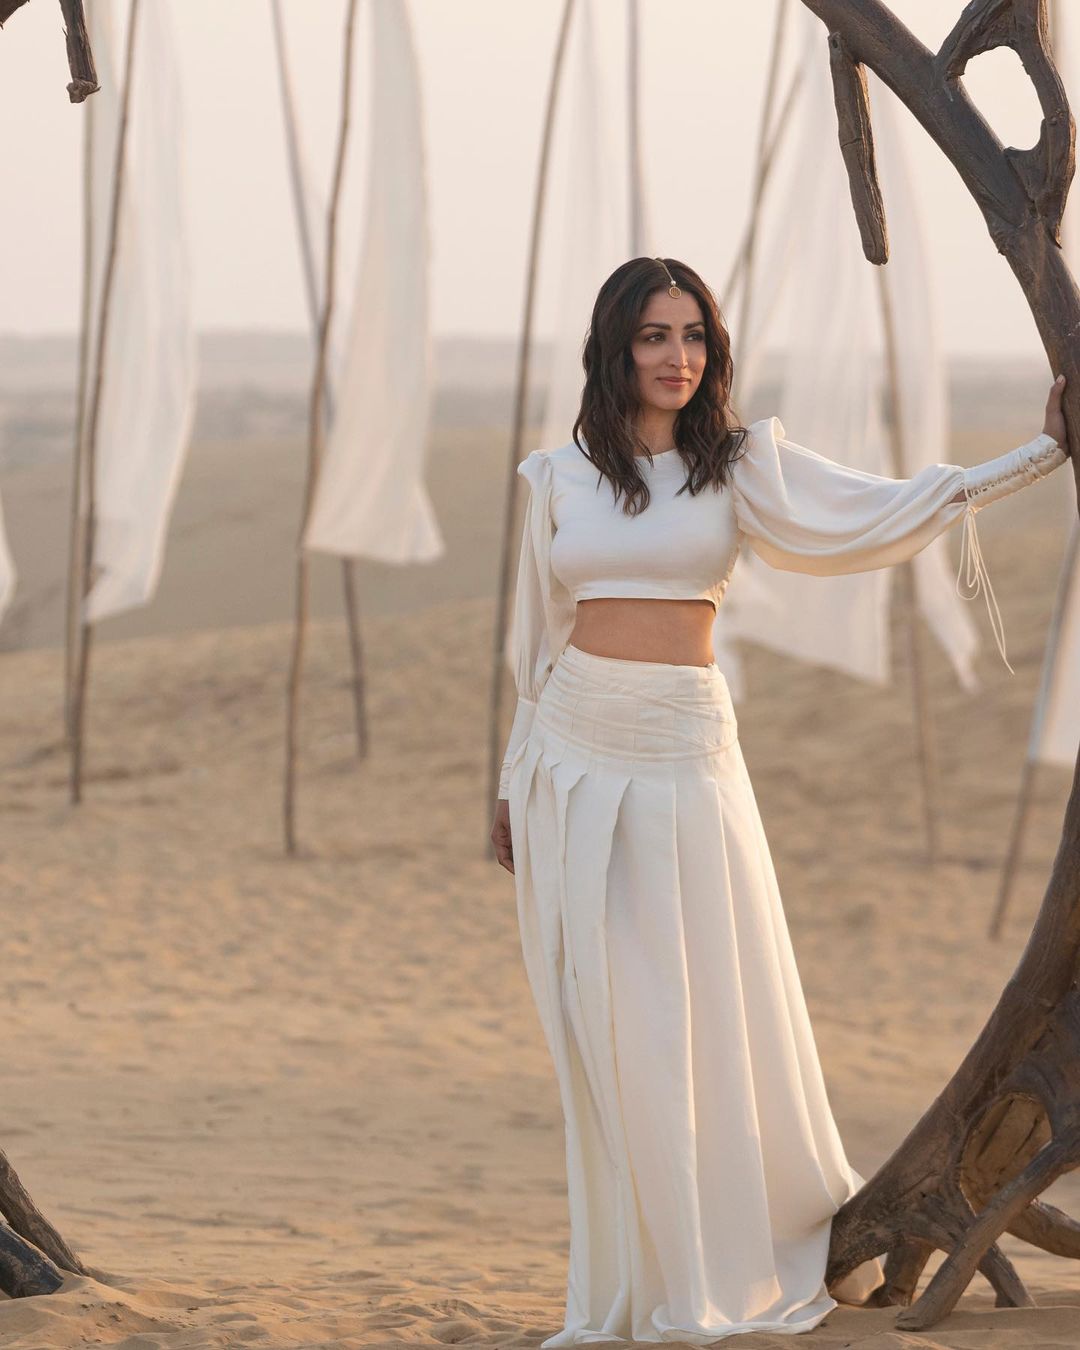 Yami Gautam looks stunning in the white crop top and matching skirt. 